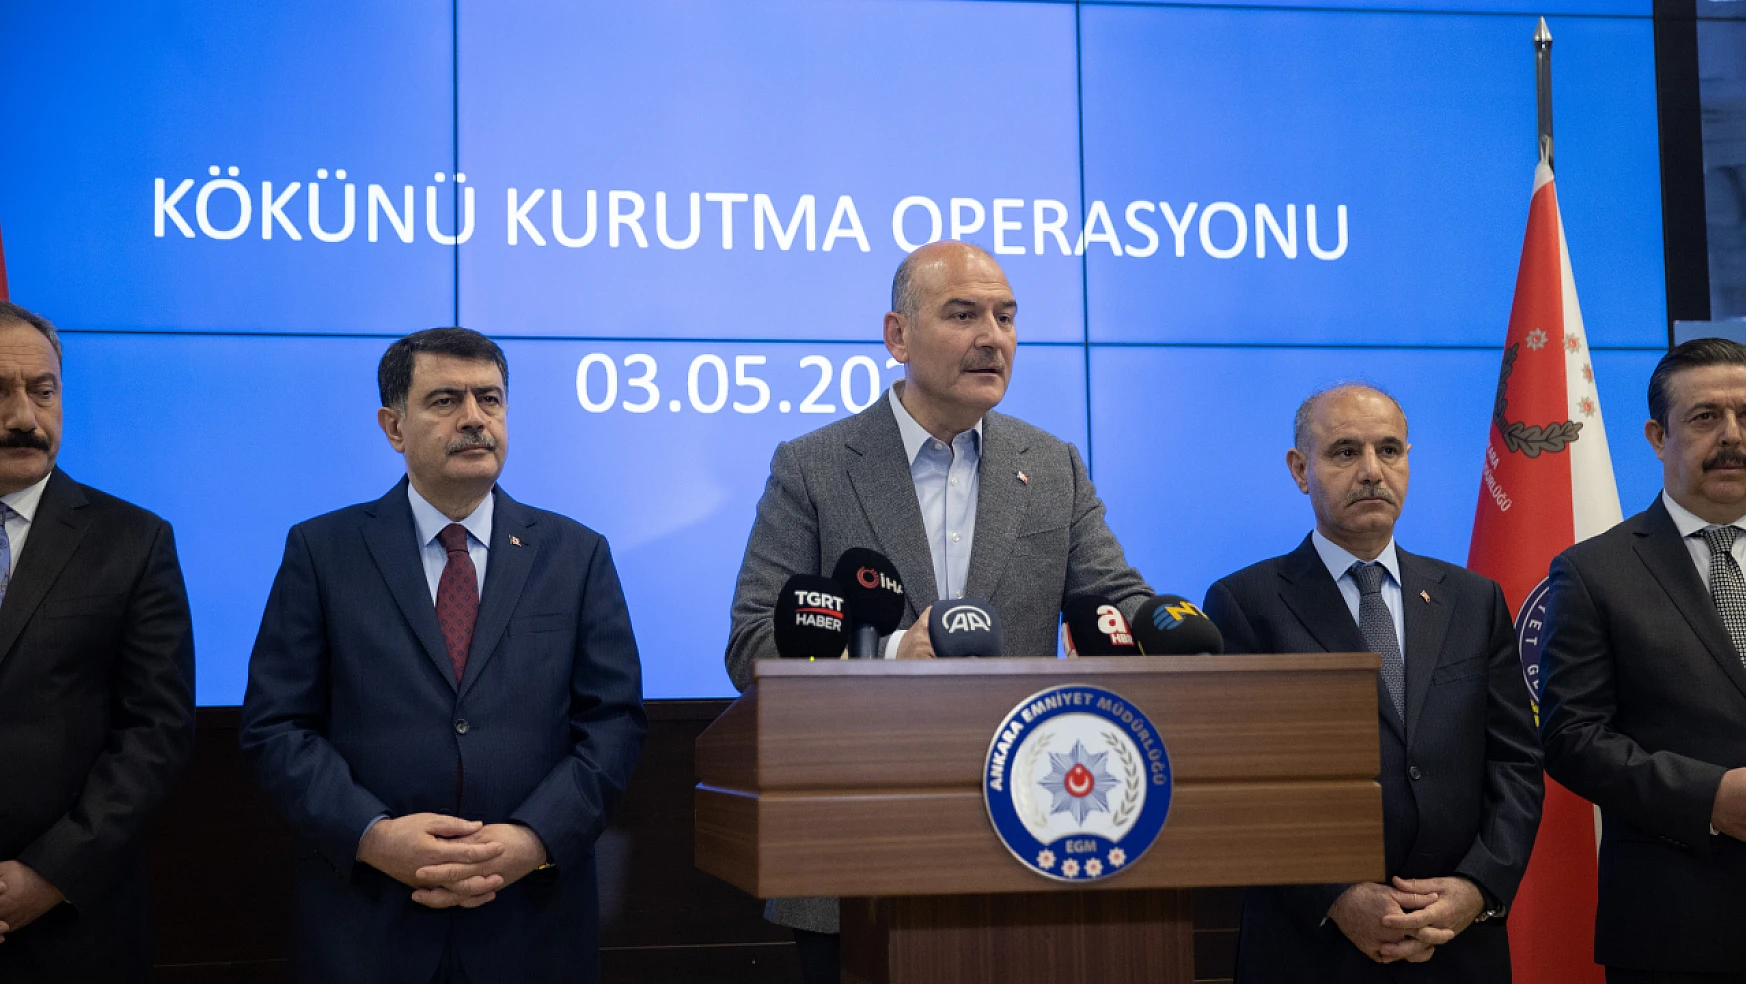 Bakan Soylu, Konya'nında aralarında bulunduğu 'Kökünü Kurutma Operasyonu' ile ilgili konuştu